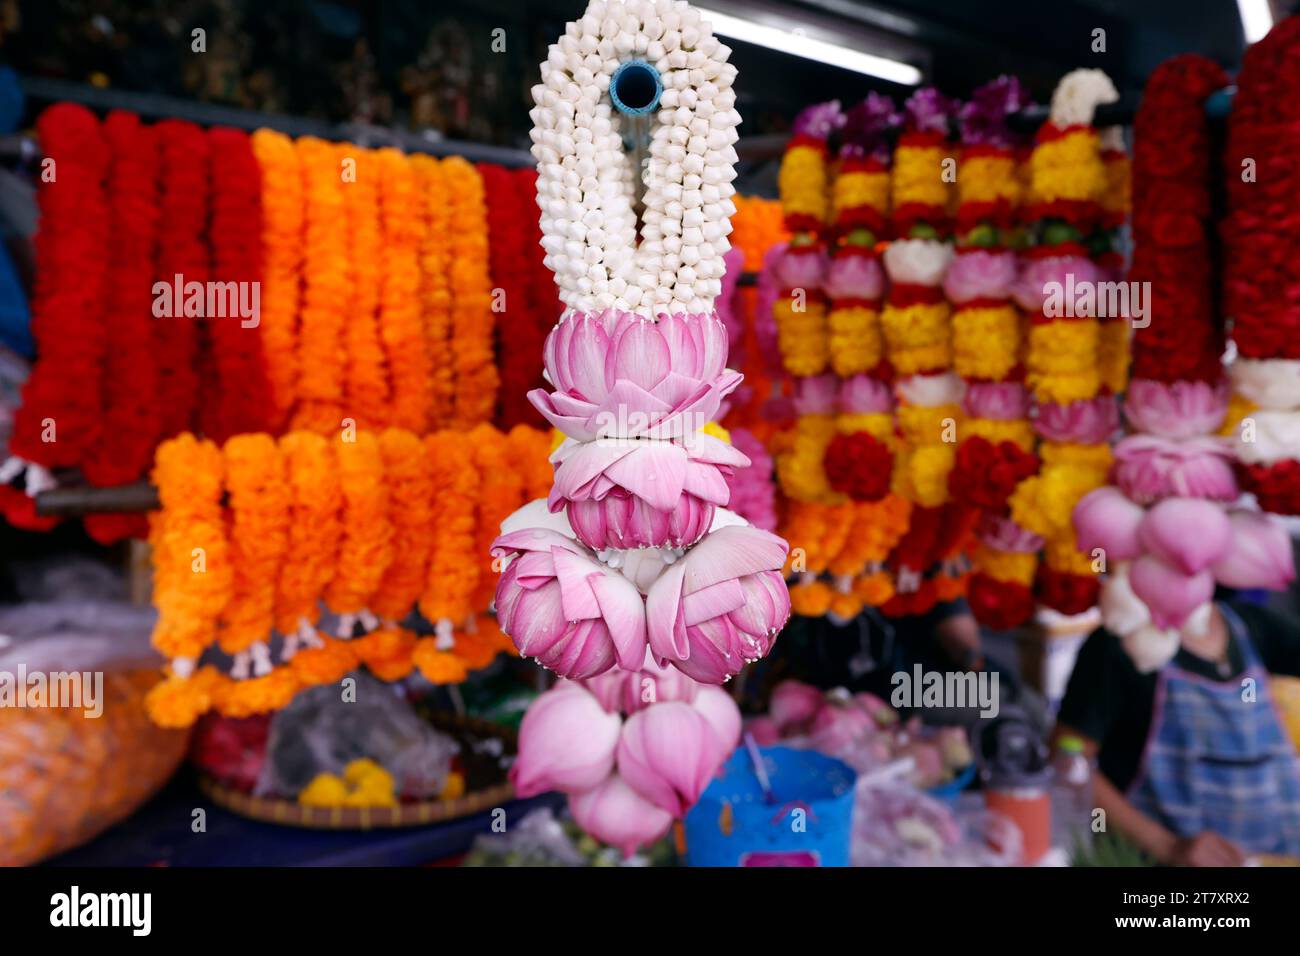 Guirlandes de fleurs comme offrandes de temple pour la cérémonie hindoue, magasin de fleurs indiennes au temple Sri Maha Mariamman, Bangkok, Thaïlande, Asie du Sud-est, Asie Banque D'Images